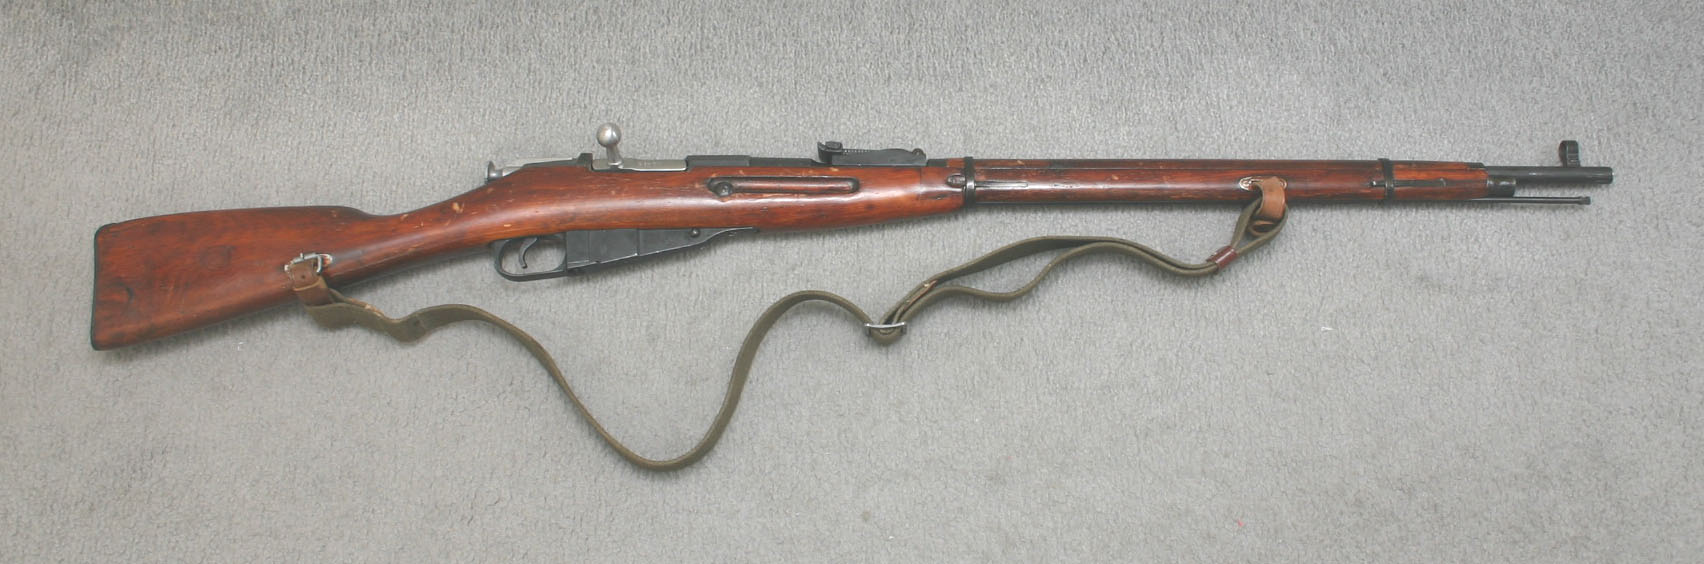 Rifle Mosin-nagant